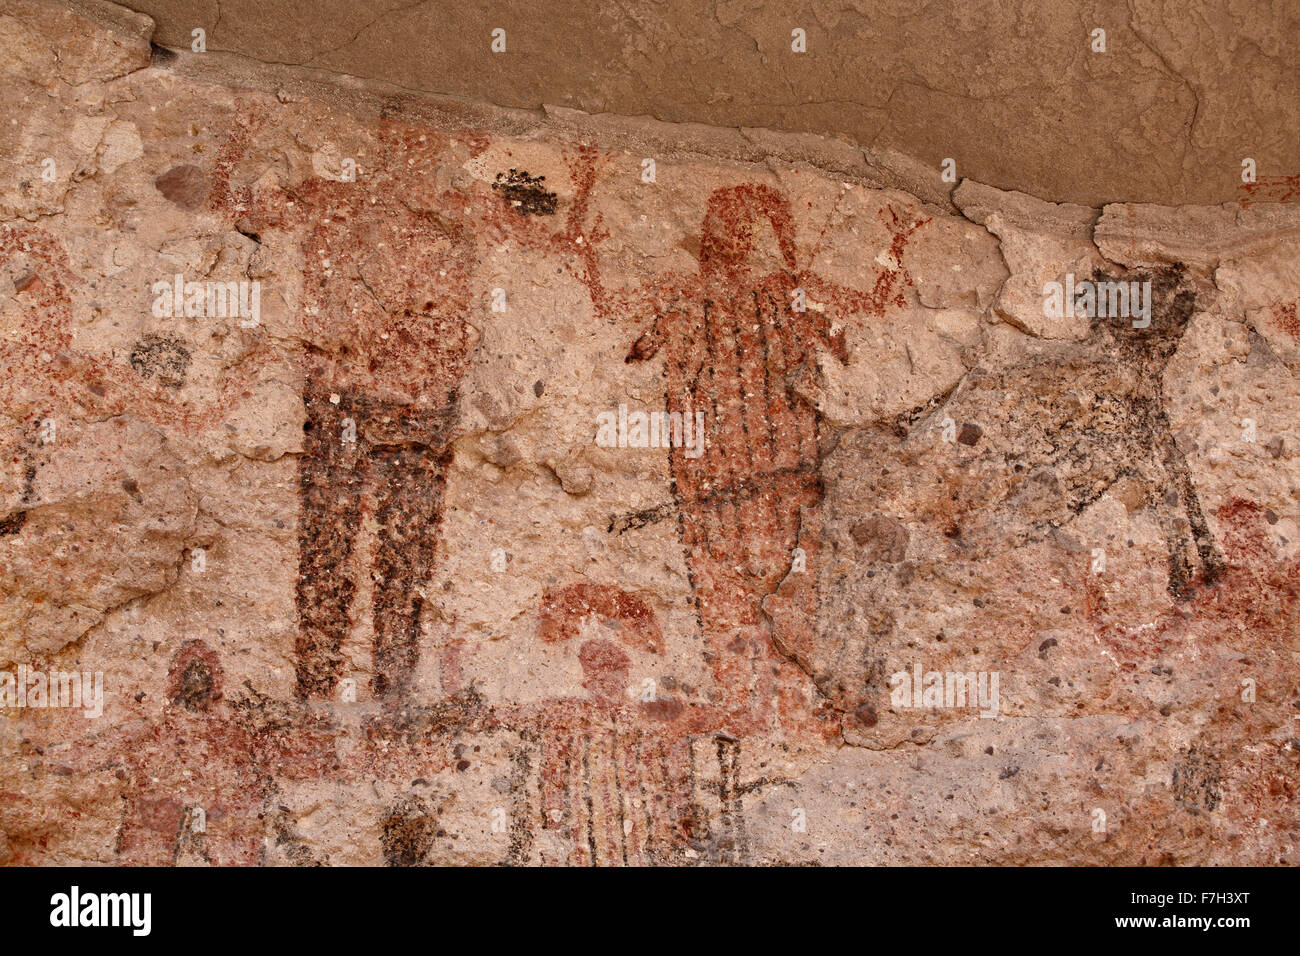 Pr5398-D. Pétroglyphes et peintures rupestres de Santa Marta, qui montrent des personnes, d'animaux (chevreuils, lapins, poissons, etc.). Baja, au Mexique. Banque D'Images